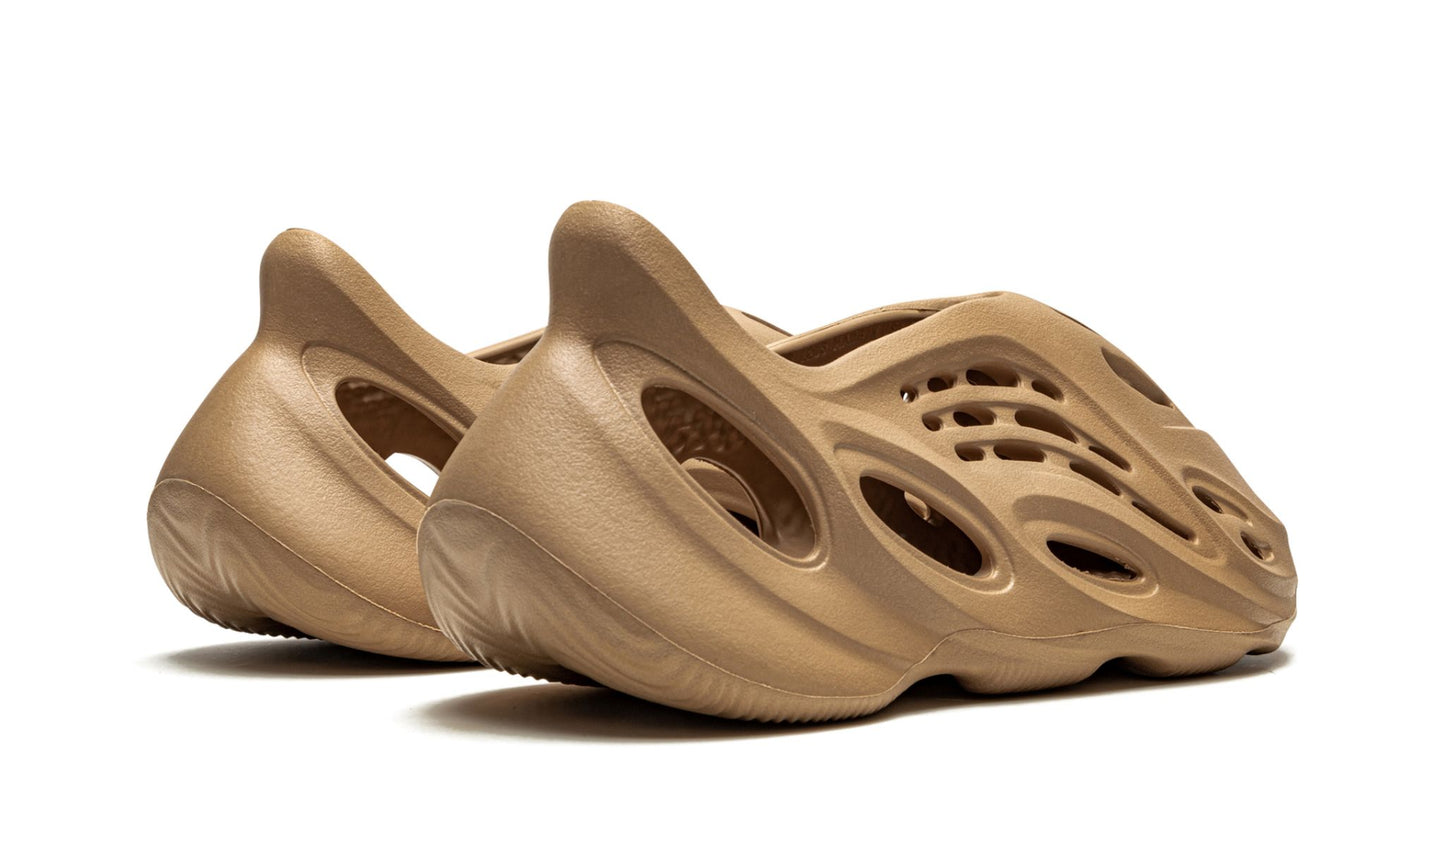 adidas Yeezy Foam Runner 'Ochre'